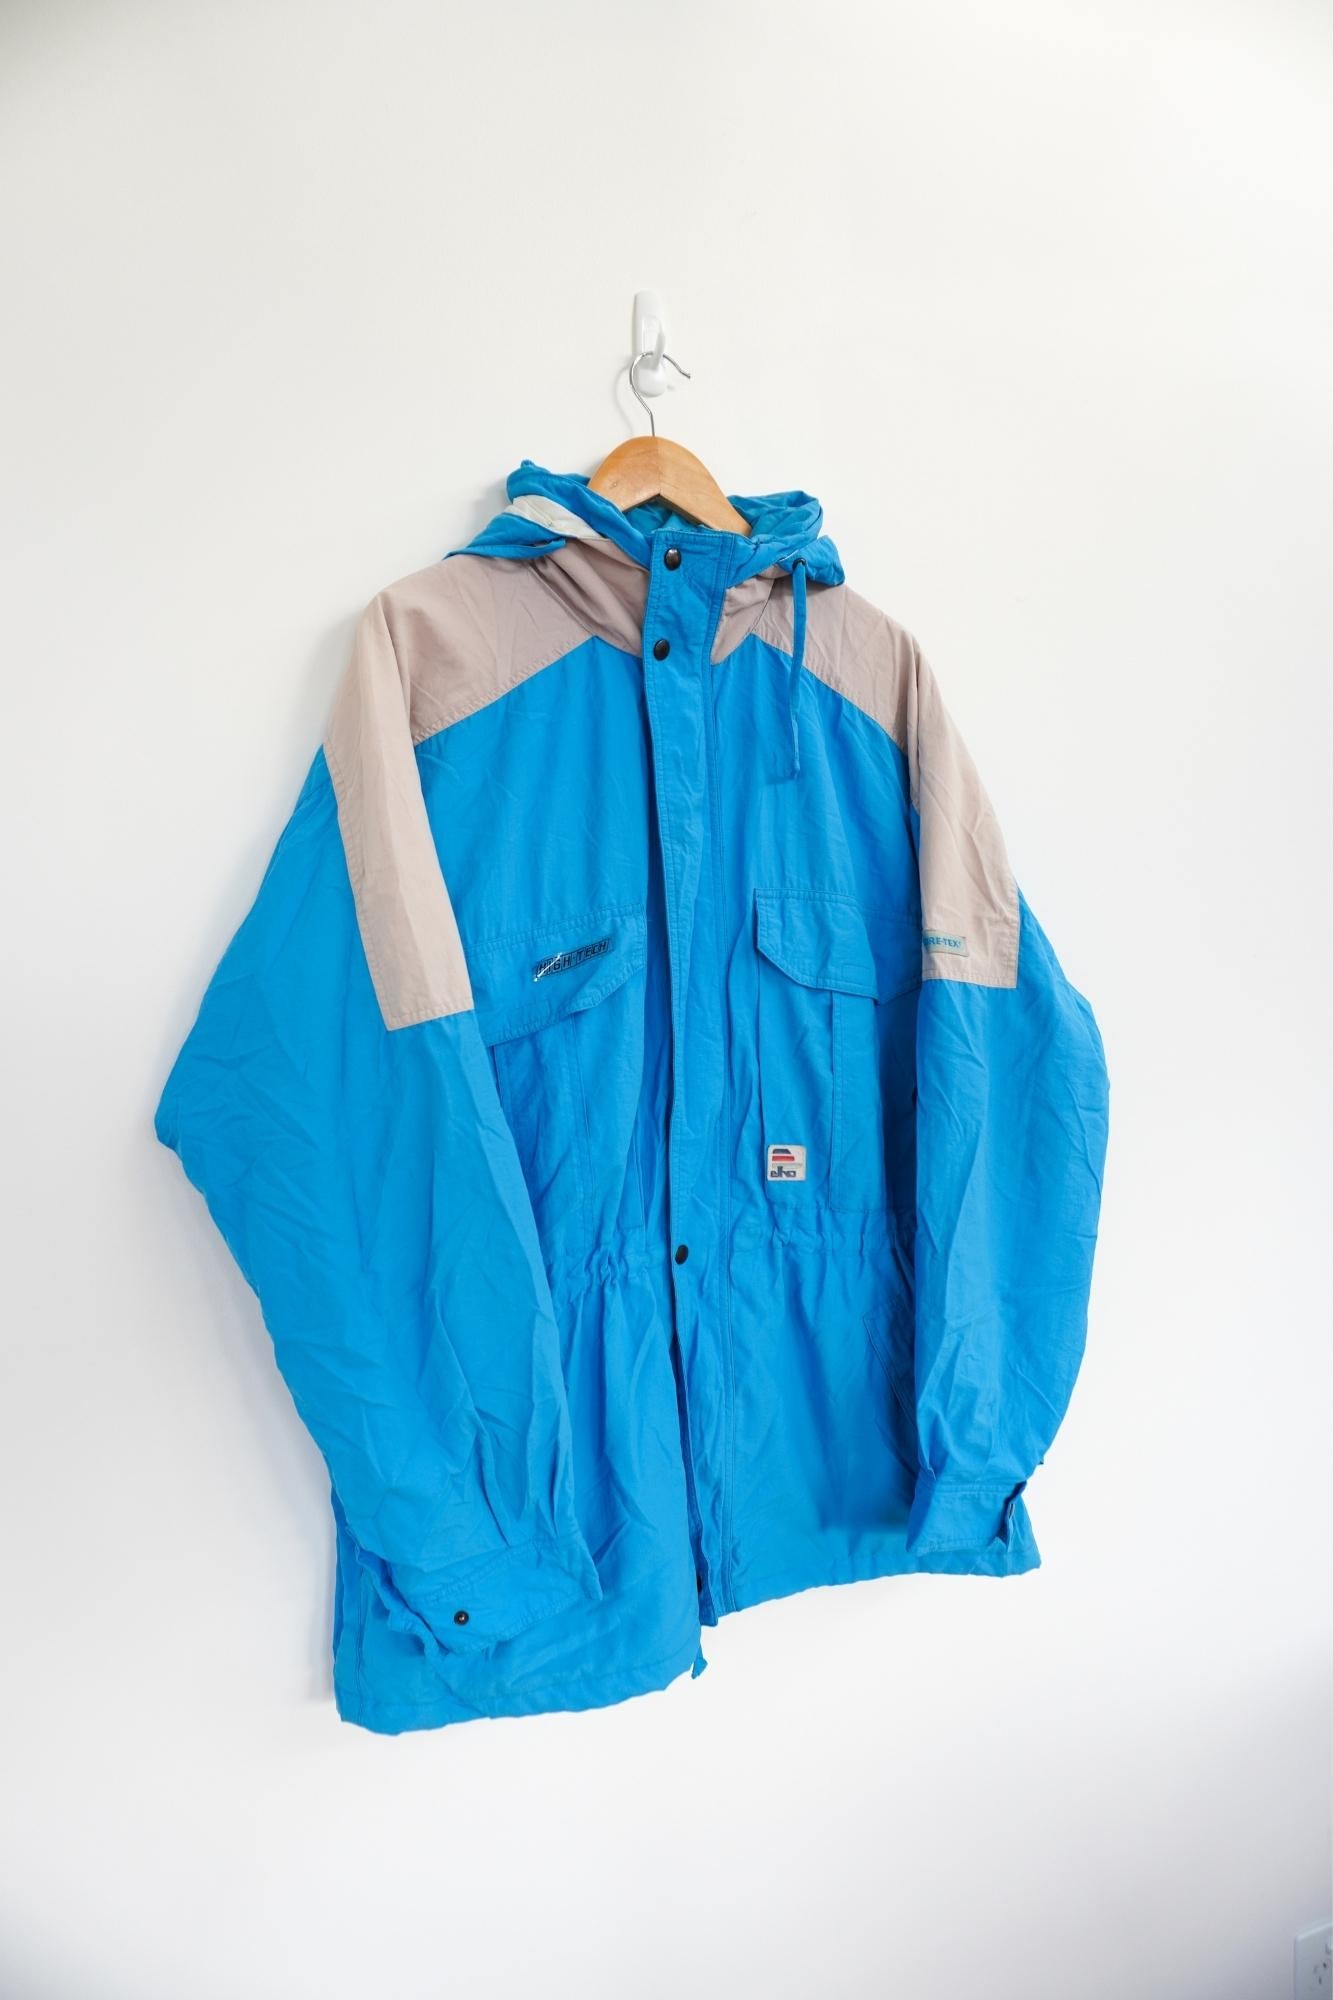 Elko Light Blue Vintage Ski Jacket